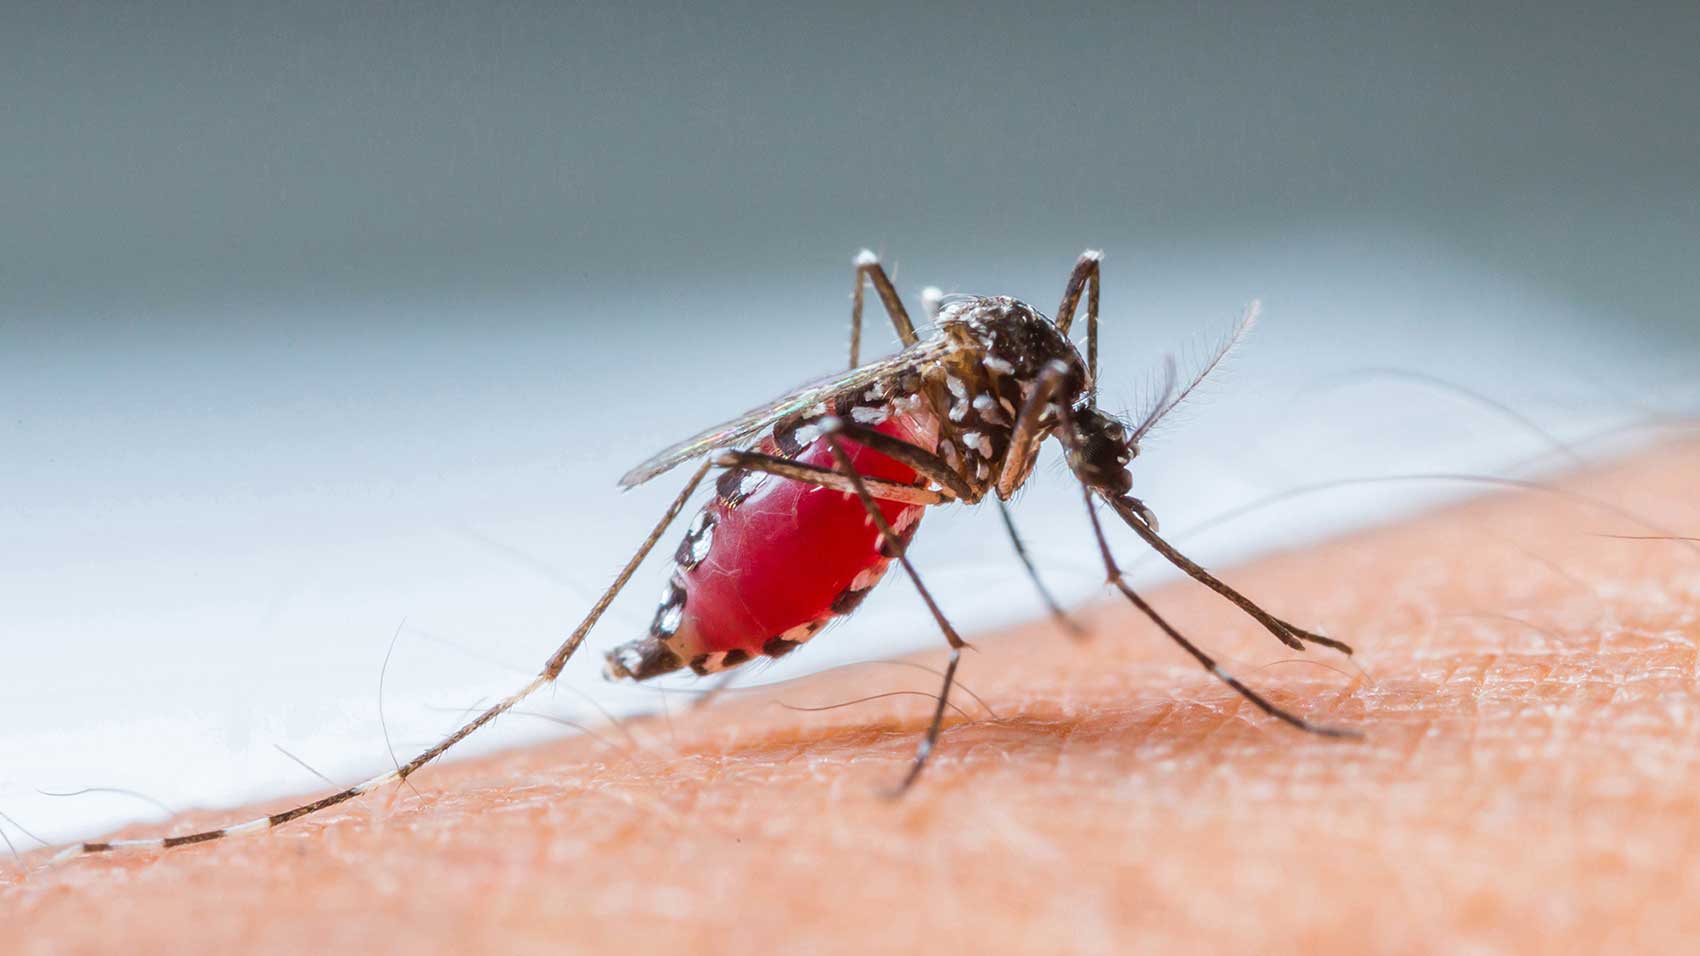 Comment les moustiques propagent-ils les maladies ?